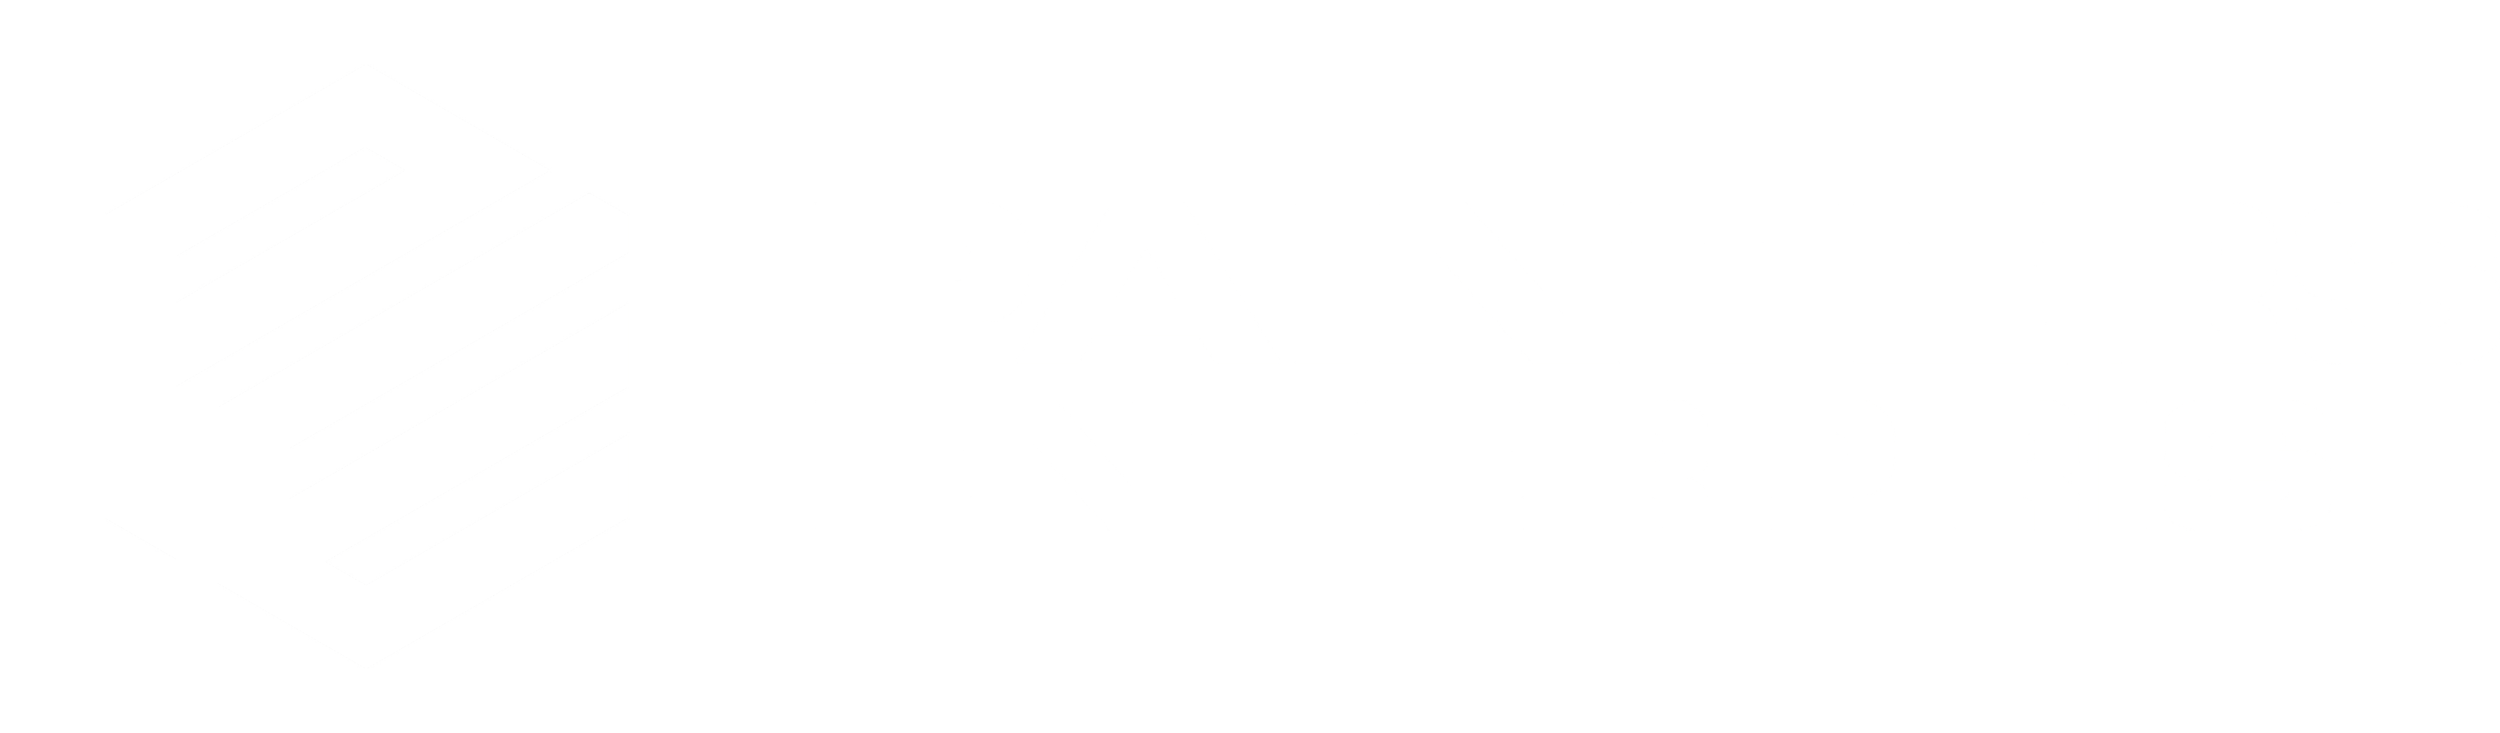 Painters Enterprise